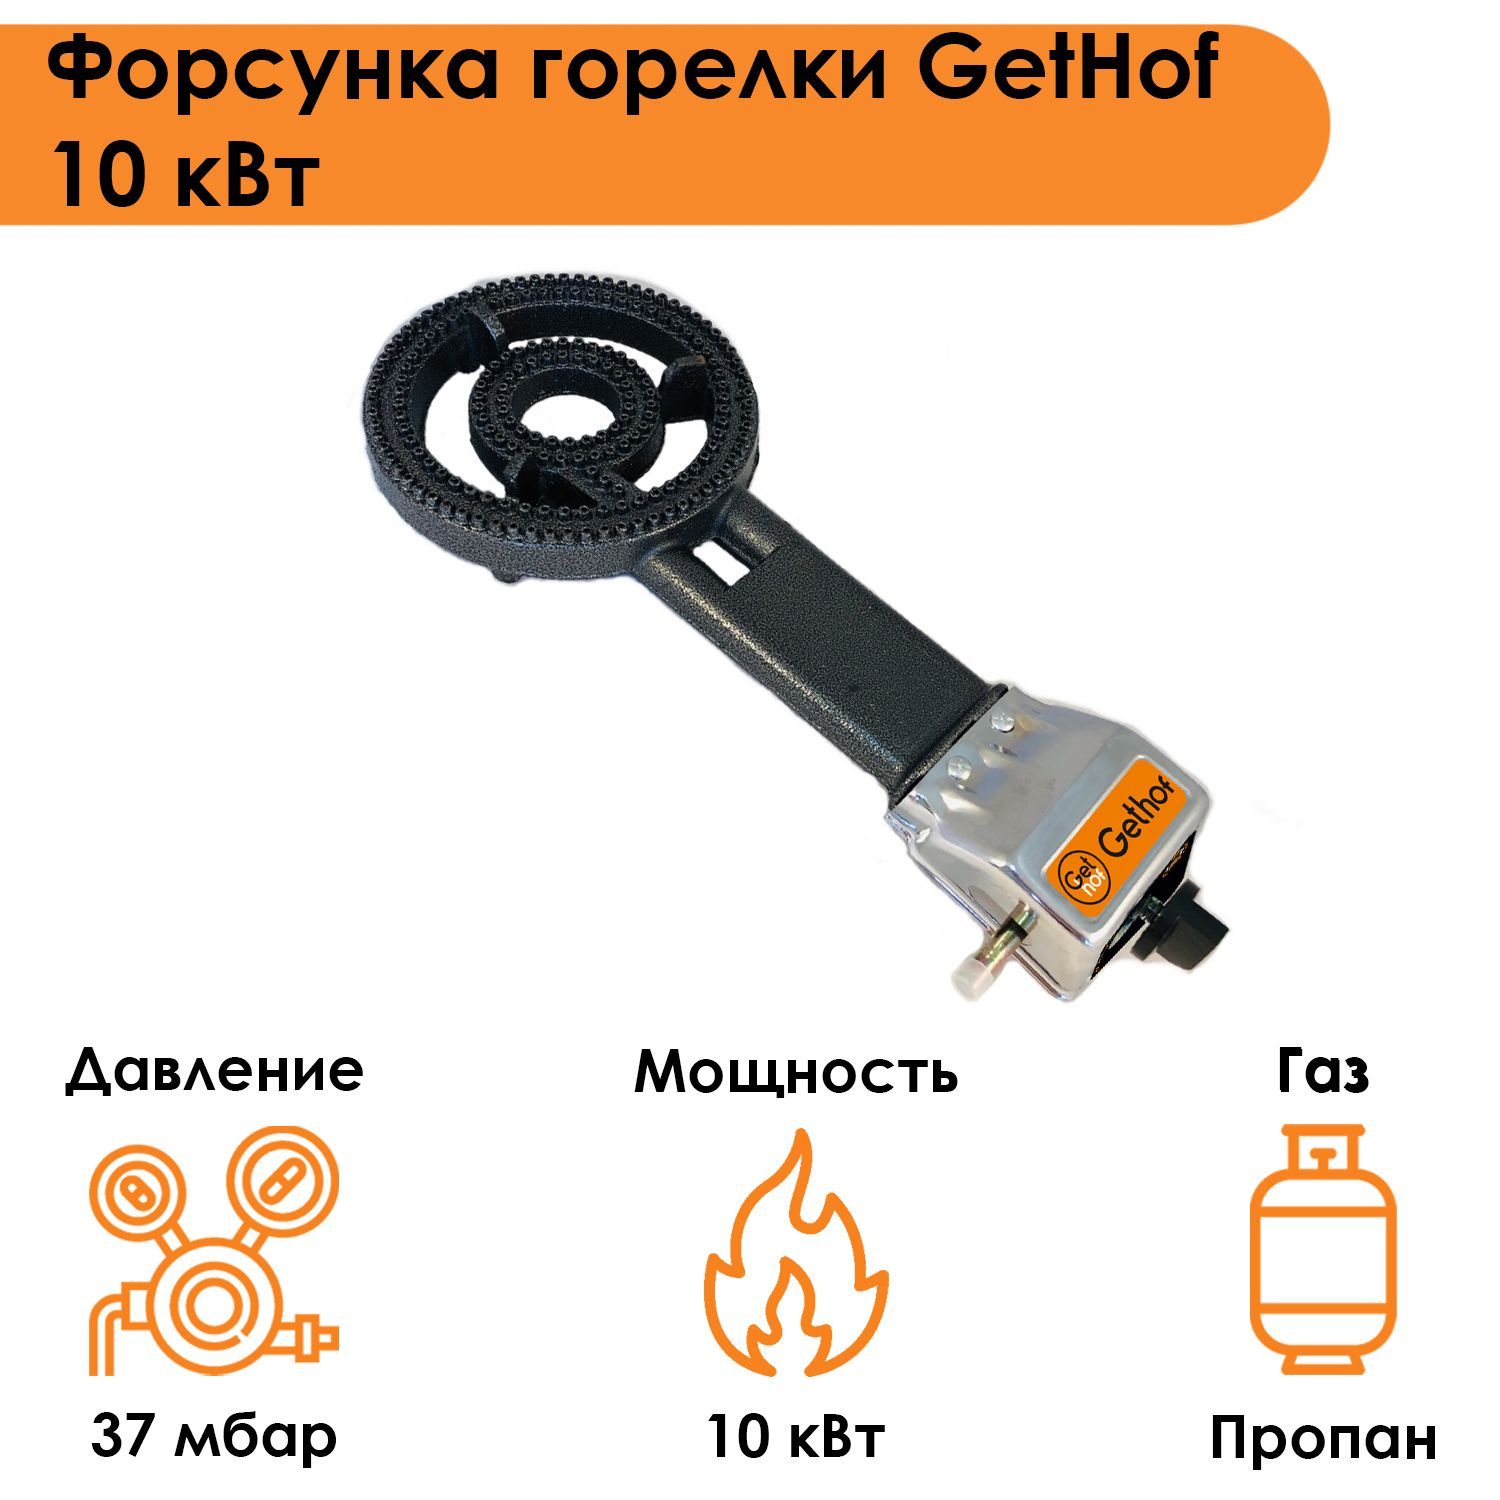 Форсунка горелки GetHof 10 кВт GB-10P (пропан)